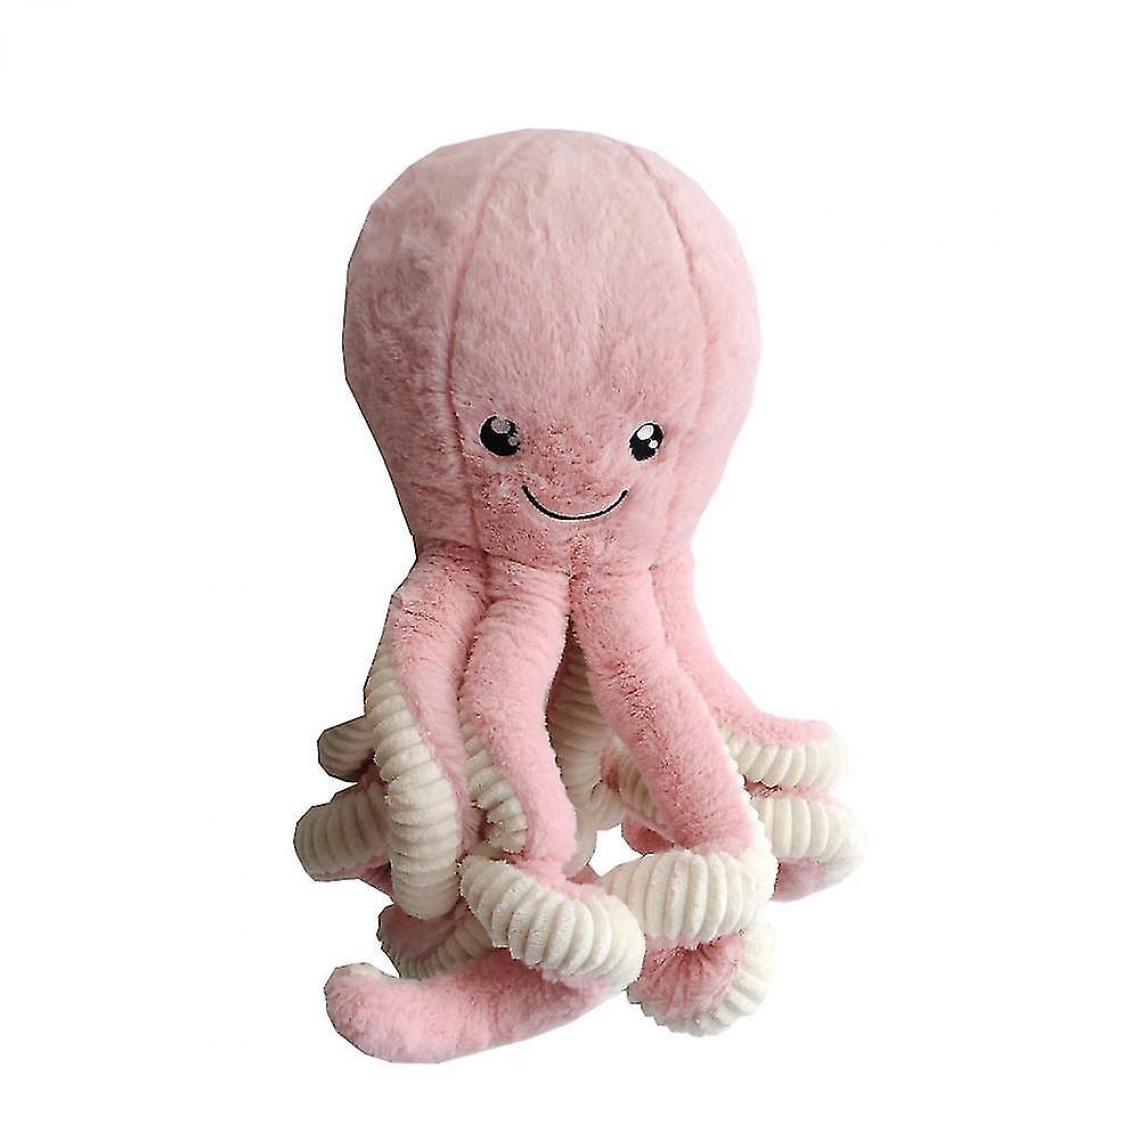 Universal - Animaux en peluche Nordiques doux et mignonnes, filles roses adorables, poupées Octopus, jouets en peluche, poupées confortables, cadeaux d'anniversaire.(Rose) - Doudous